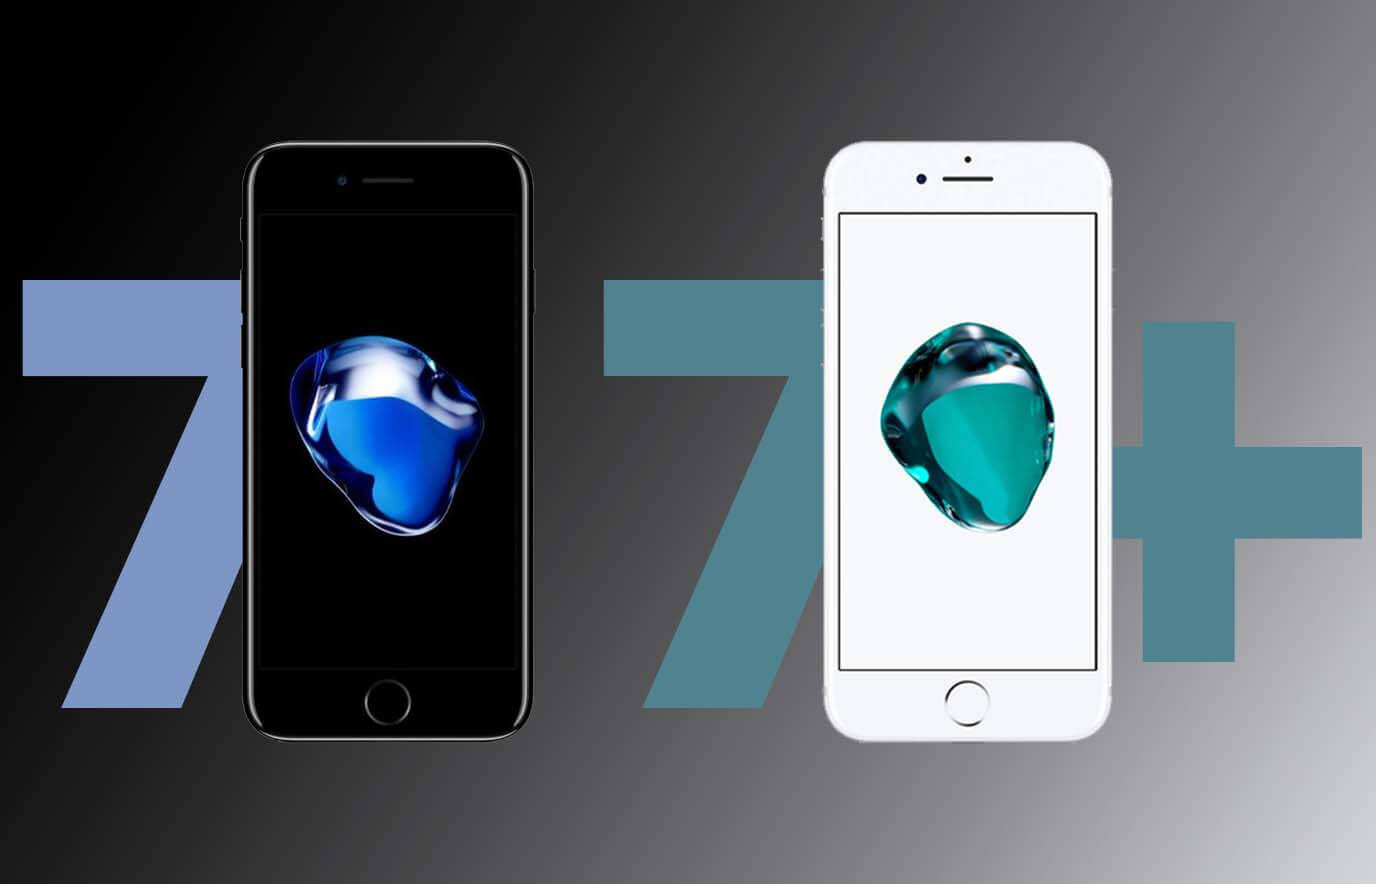 Wat is het verschil tussen de iPhone 7 en de iPhone